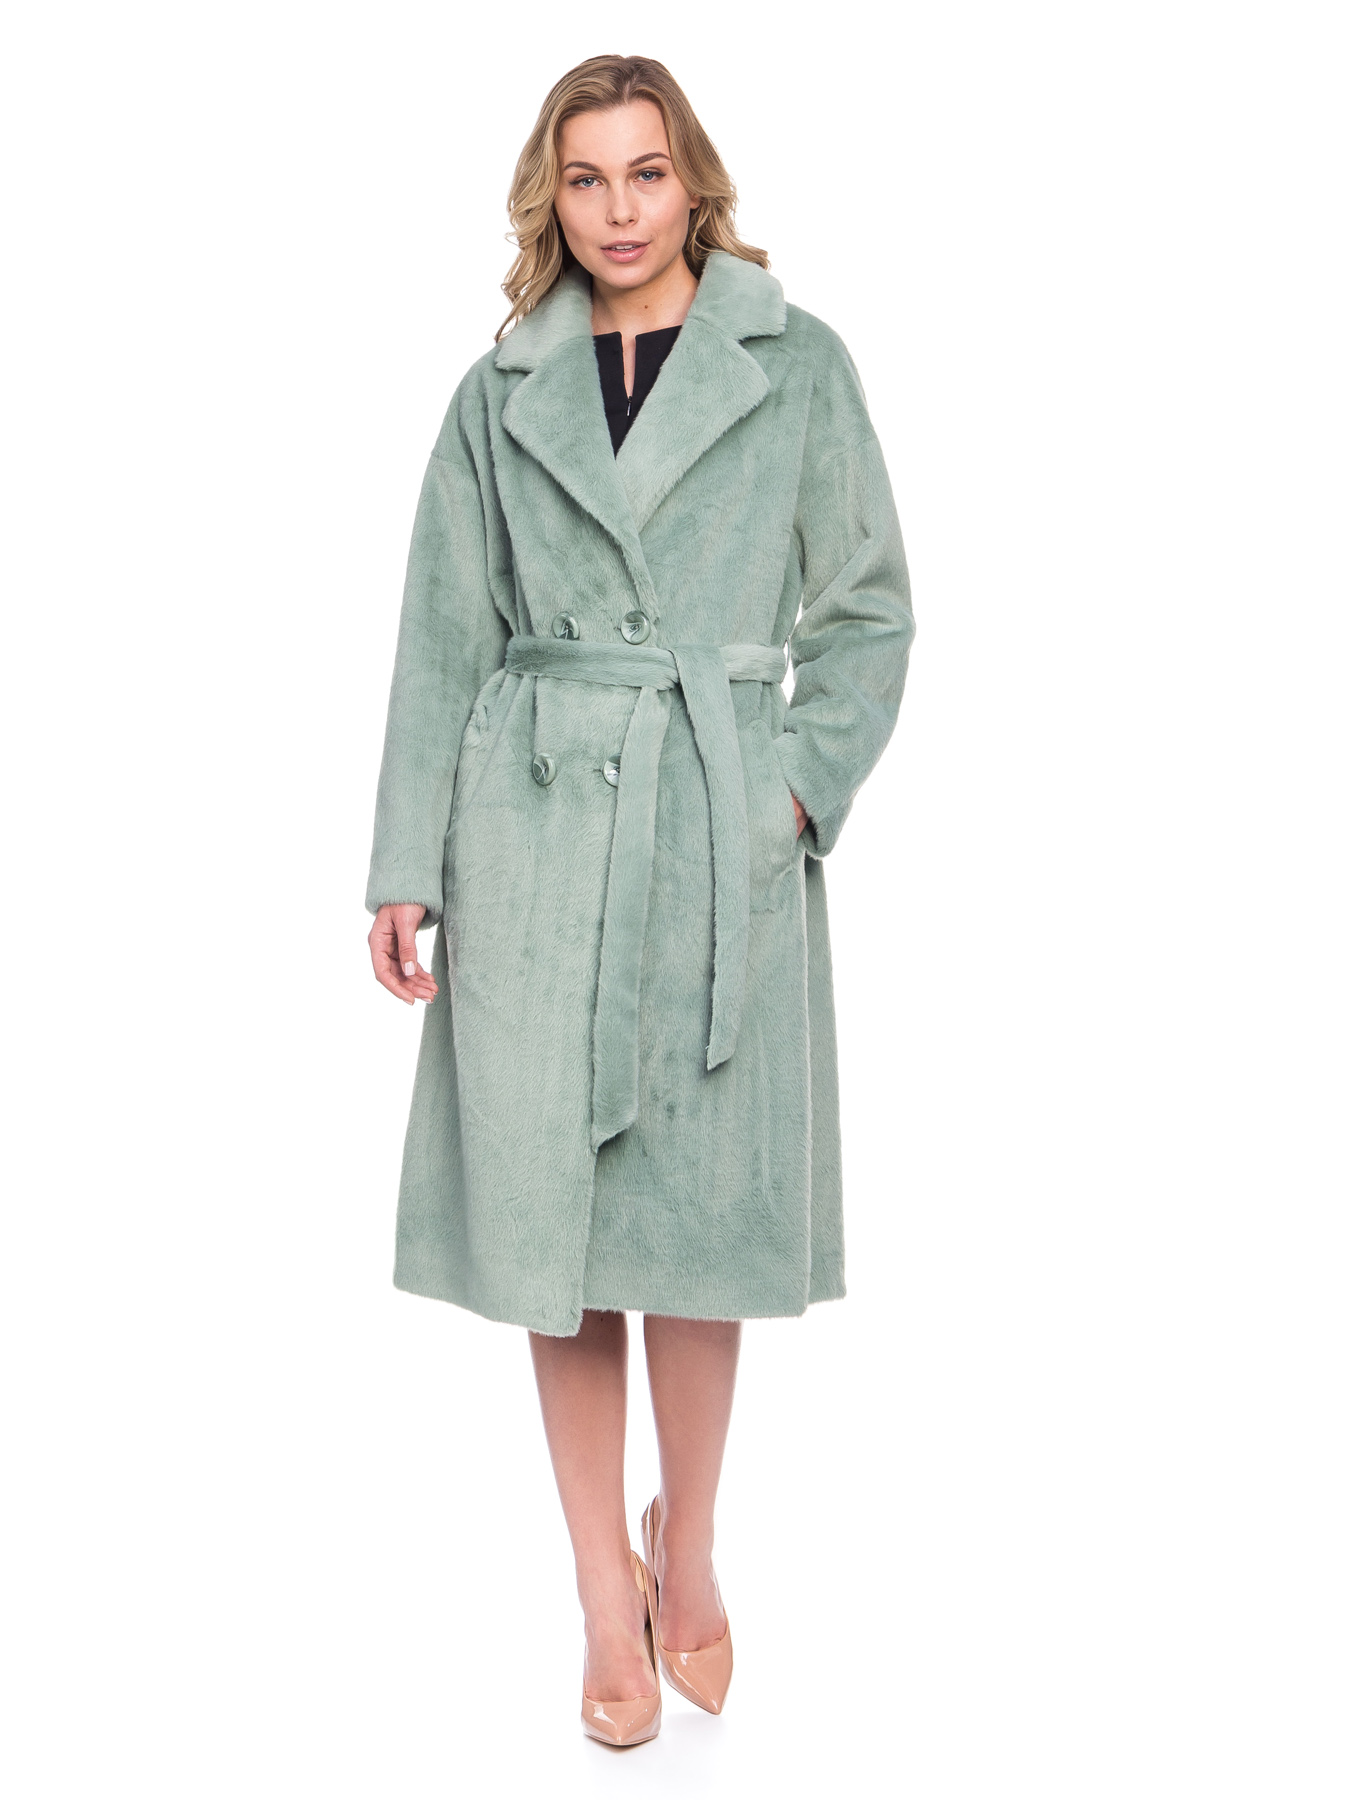 Женское пальто из эко-меха с поясом